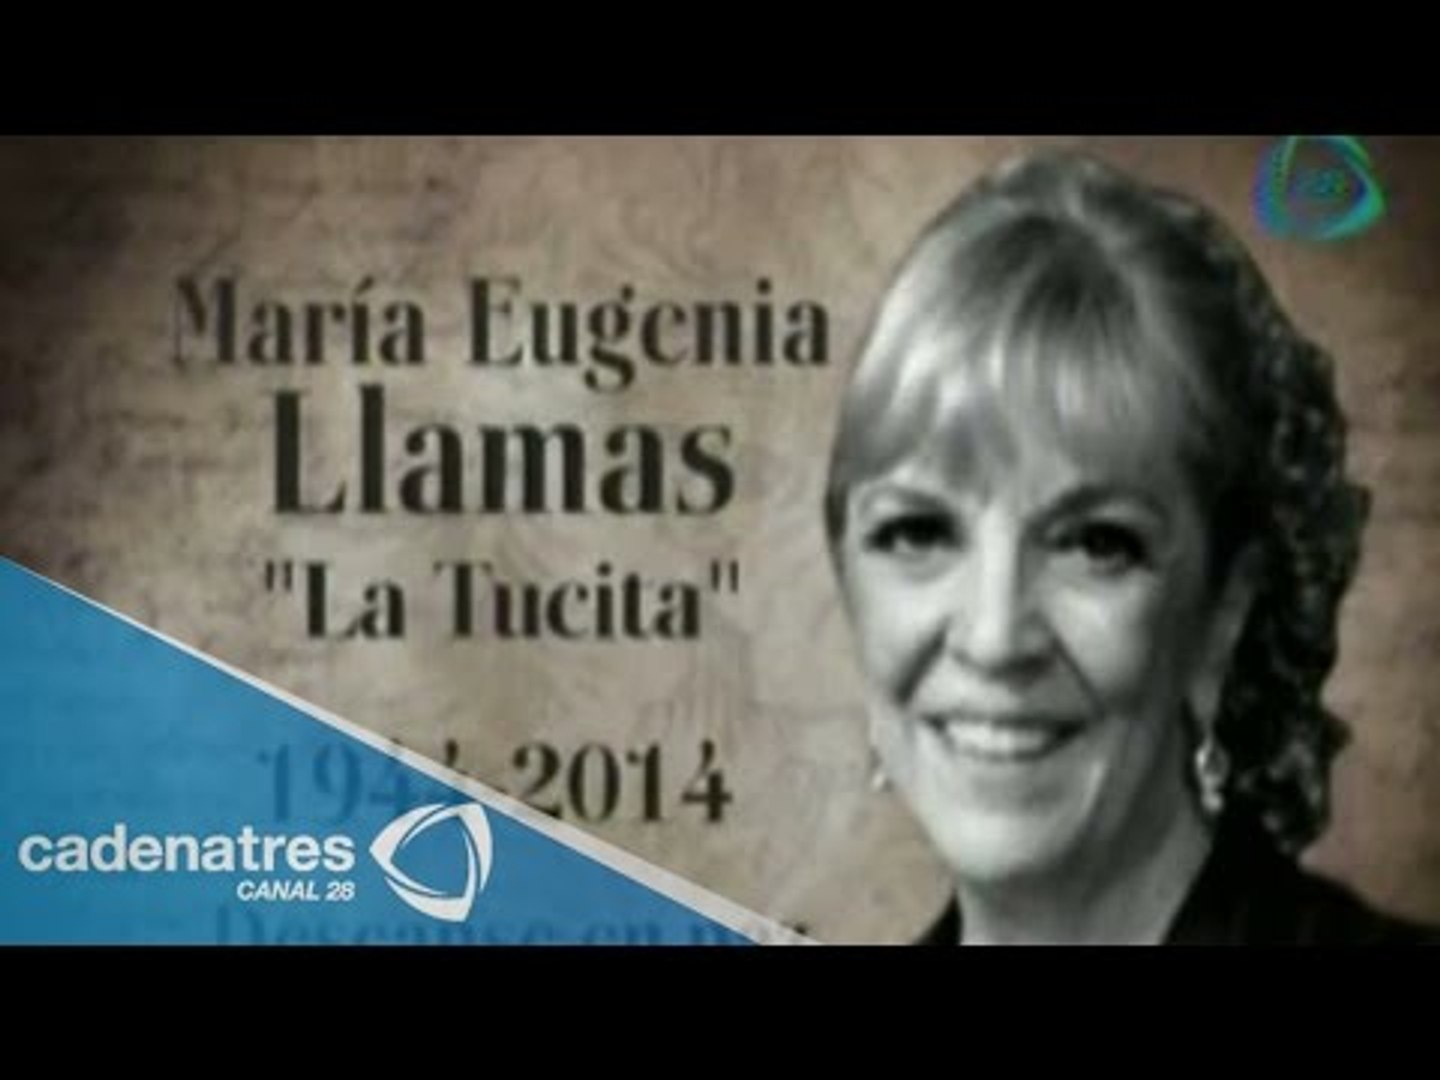 Muere María Eugenia Llamas, “La tucita” / Die María Eugenia Llamas,